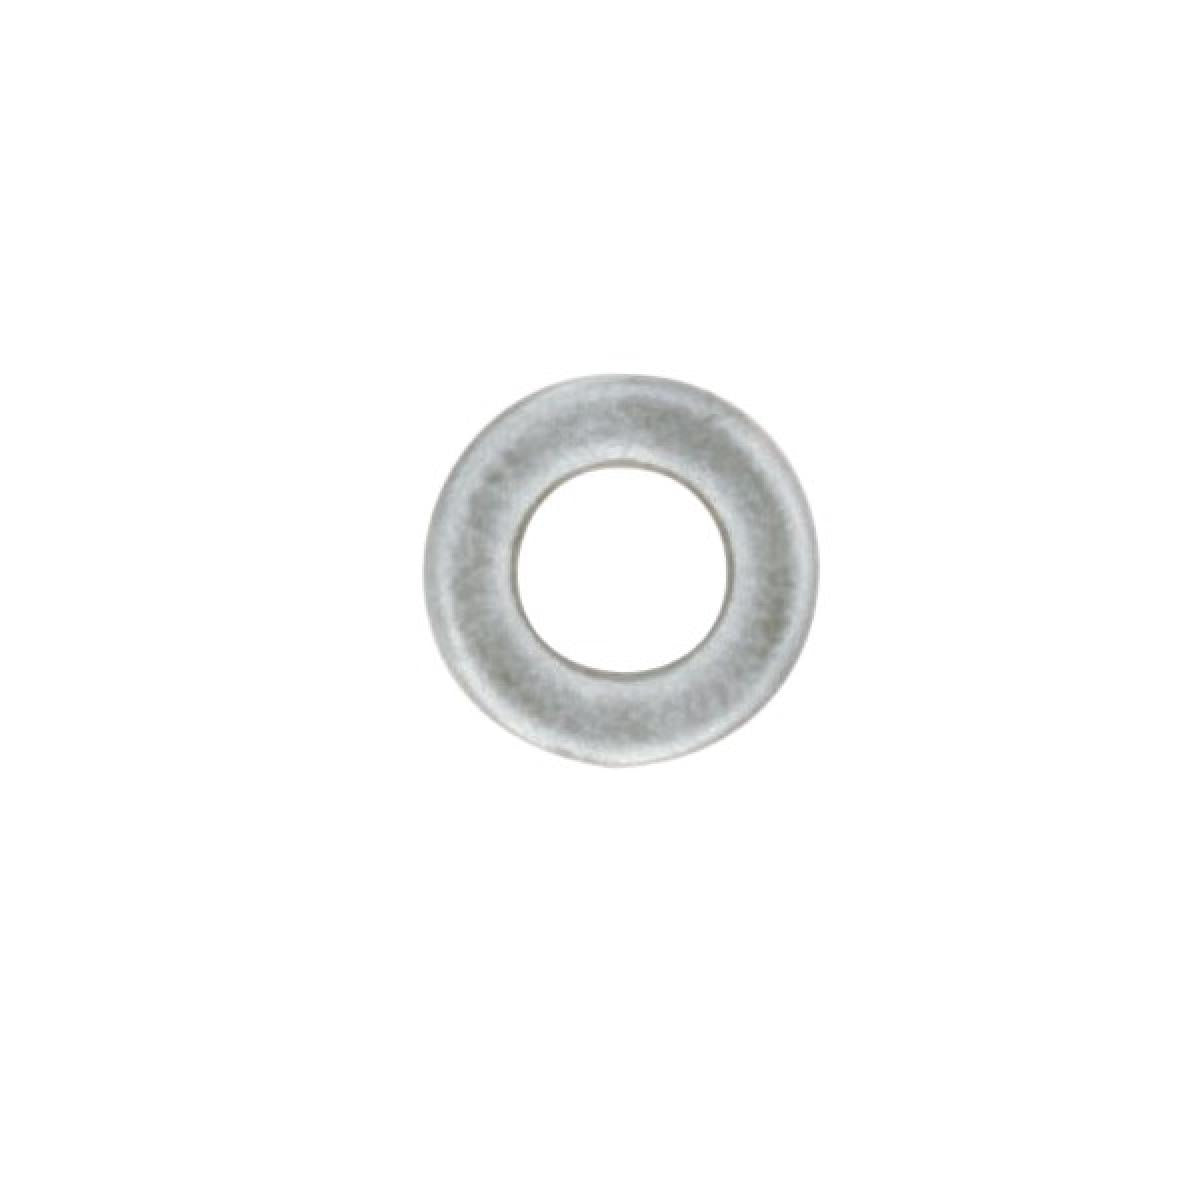 Satco 90-990 Steel Washer 1/4 IP Slip 18 Gauge Unfinished 1-1/2" Diameter